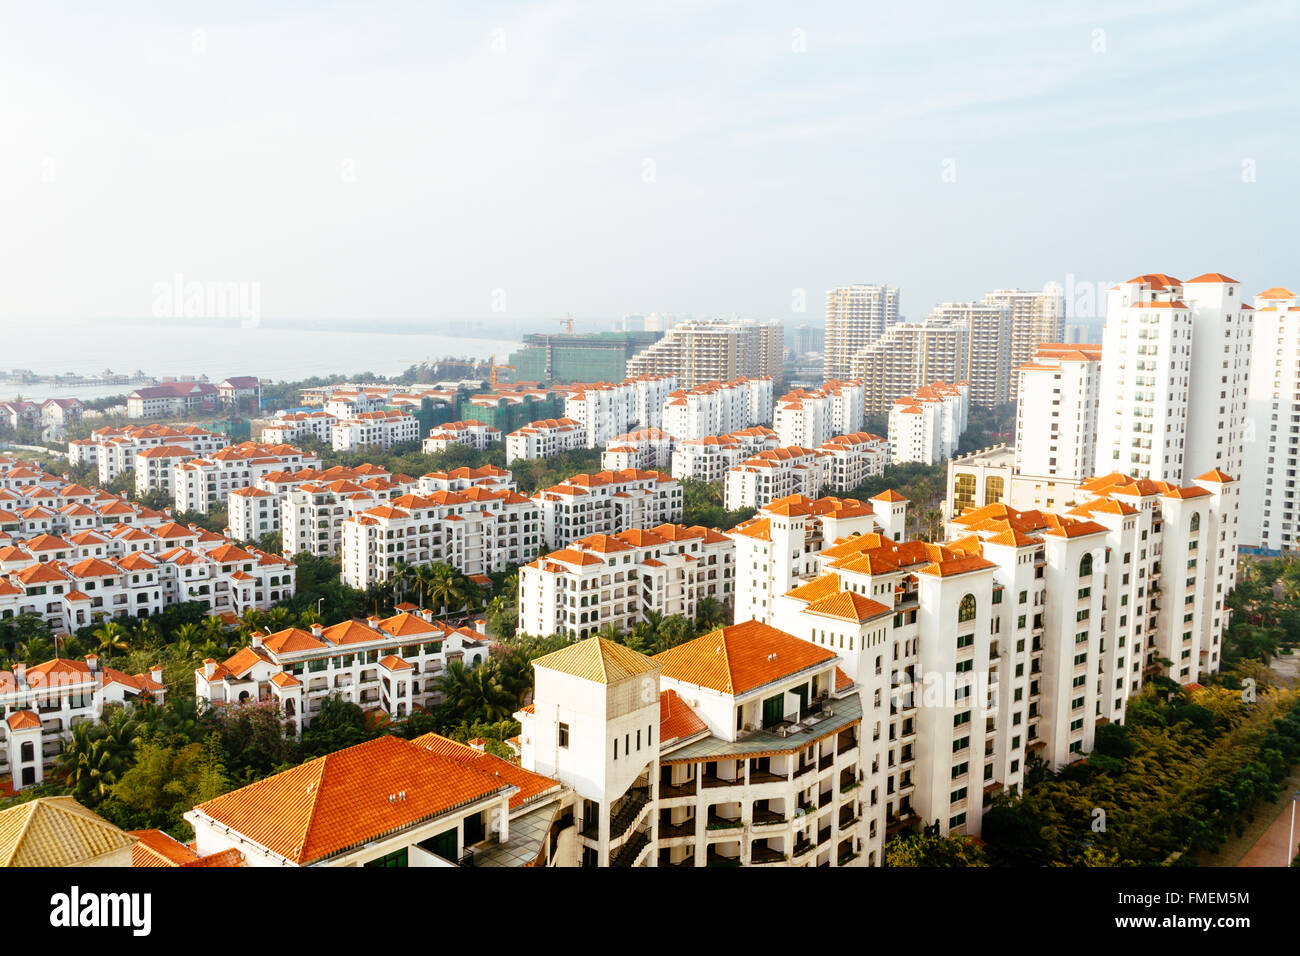 Wenchang, Insel Hainan, China - der Blick auf viele Neubauten in dieser kleinen Stadt, die meisten von ihnen werden nicht verkauft. Stockfoto